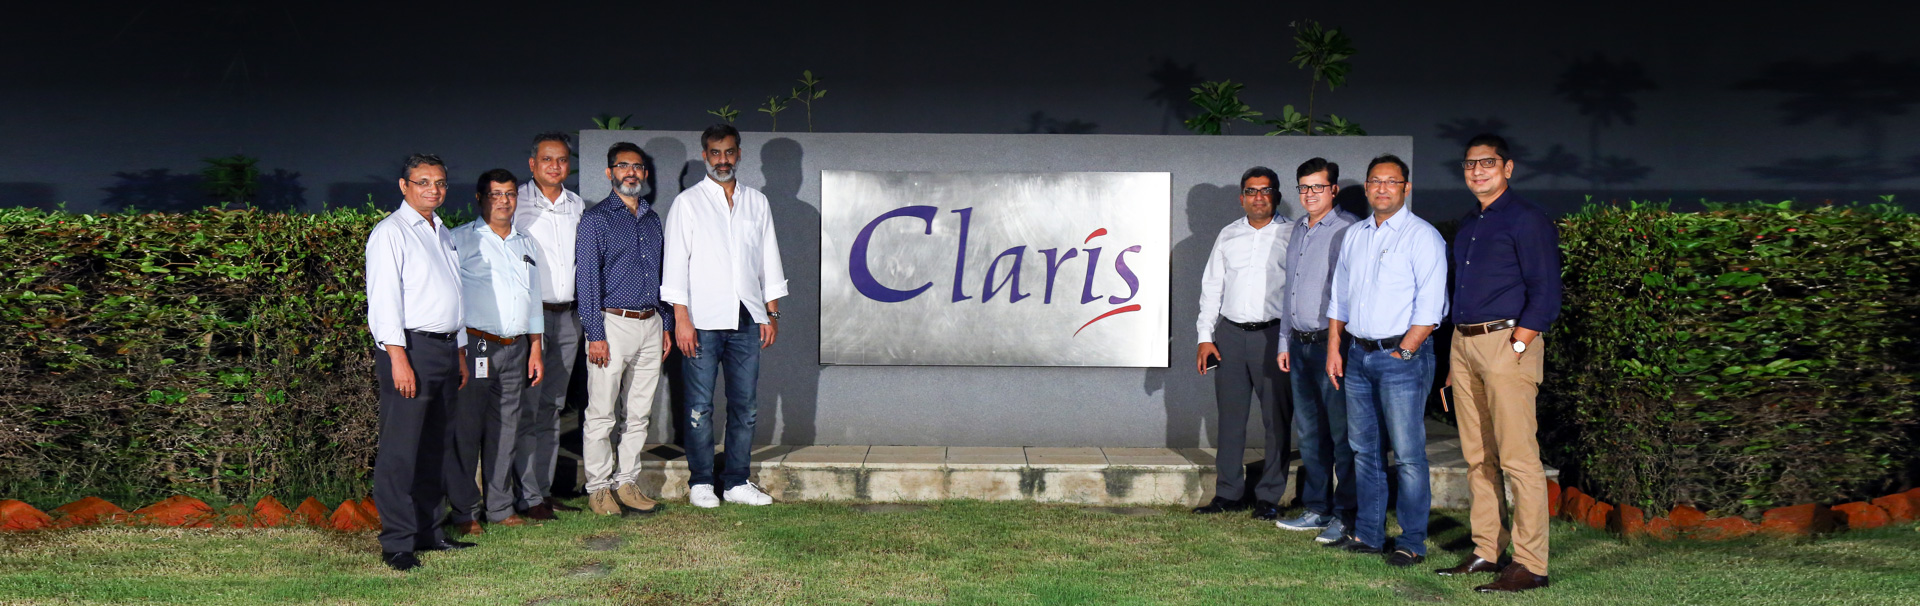 Claris Capital